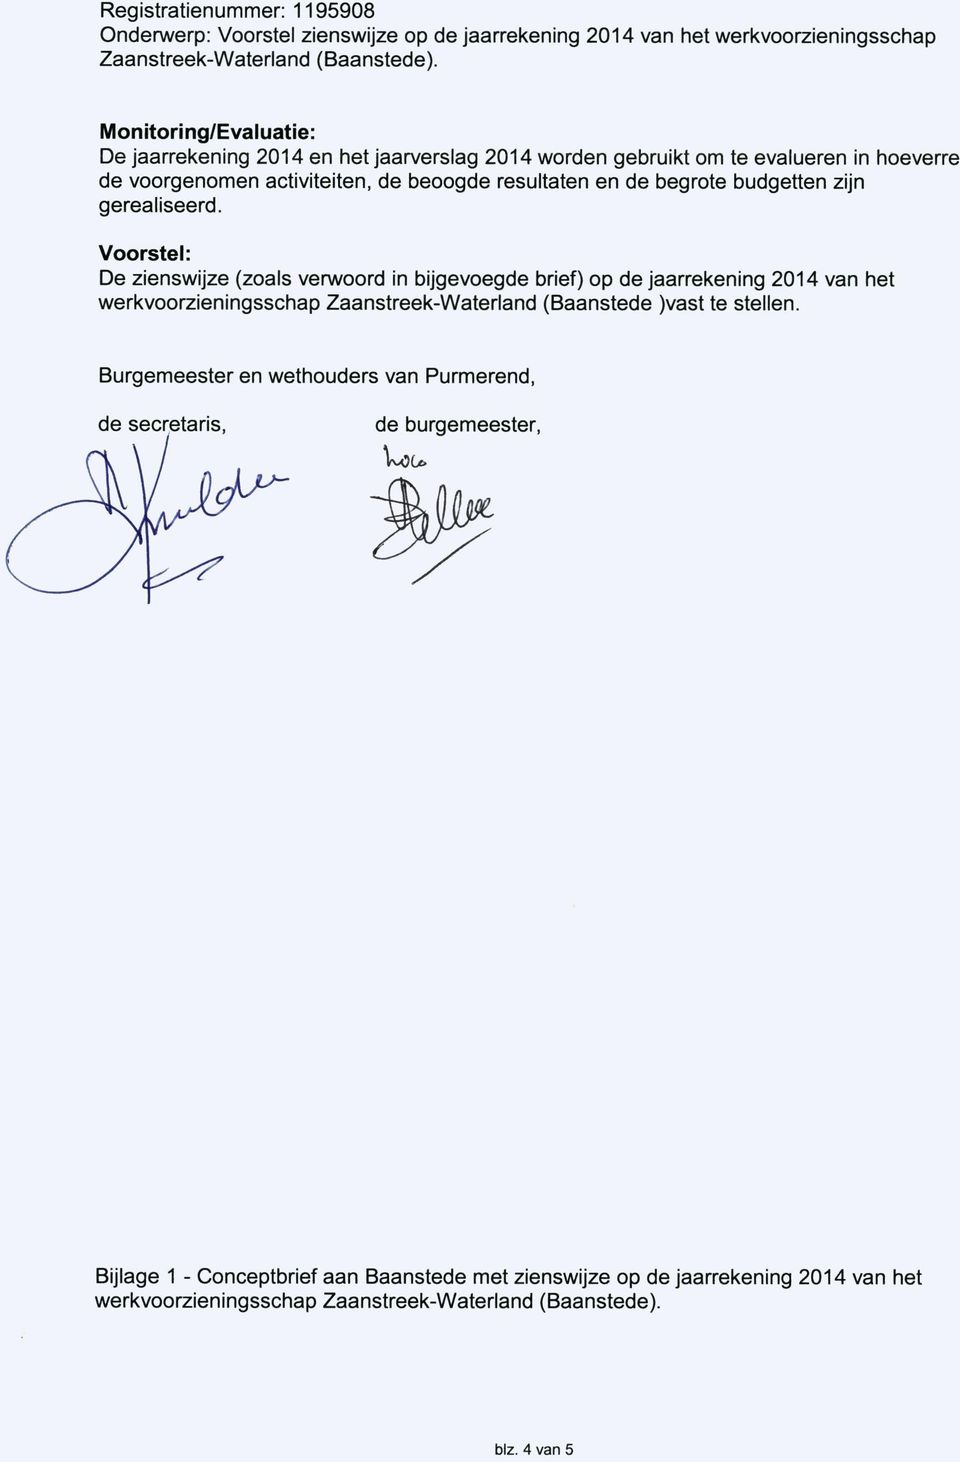 Voorstel: De zienswijze (zoals verwoord in bijgevoegde brief) op de jaarrekening 2014 van het werkvoorzieningsschap Zaanstreek-Waterland